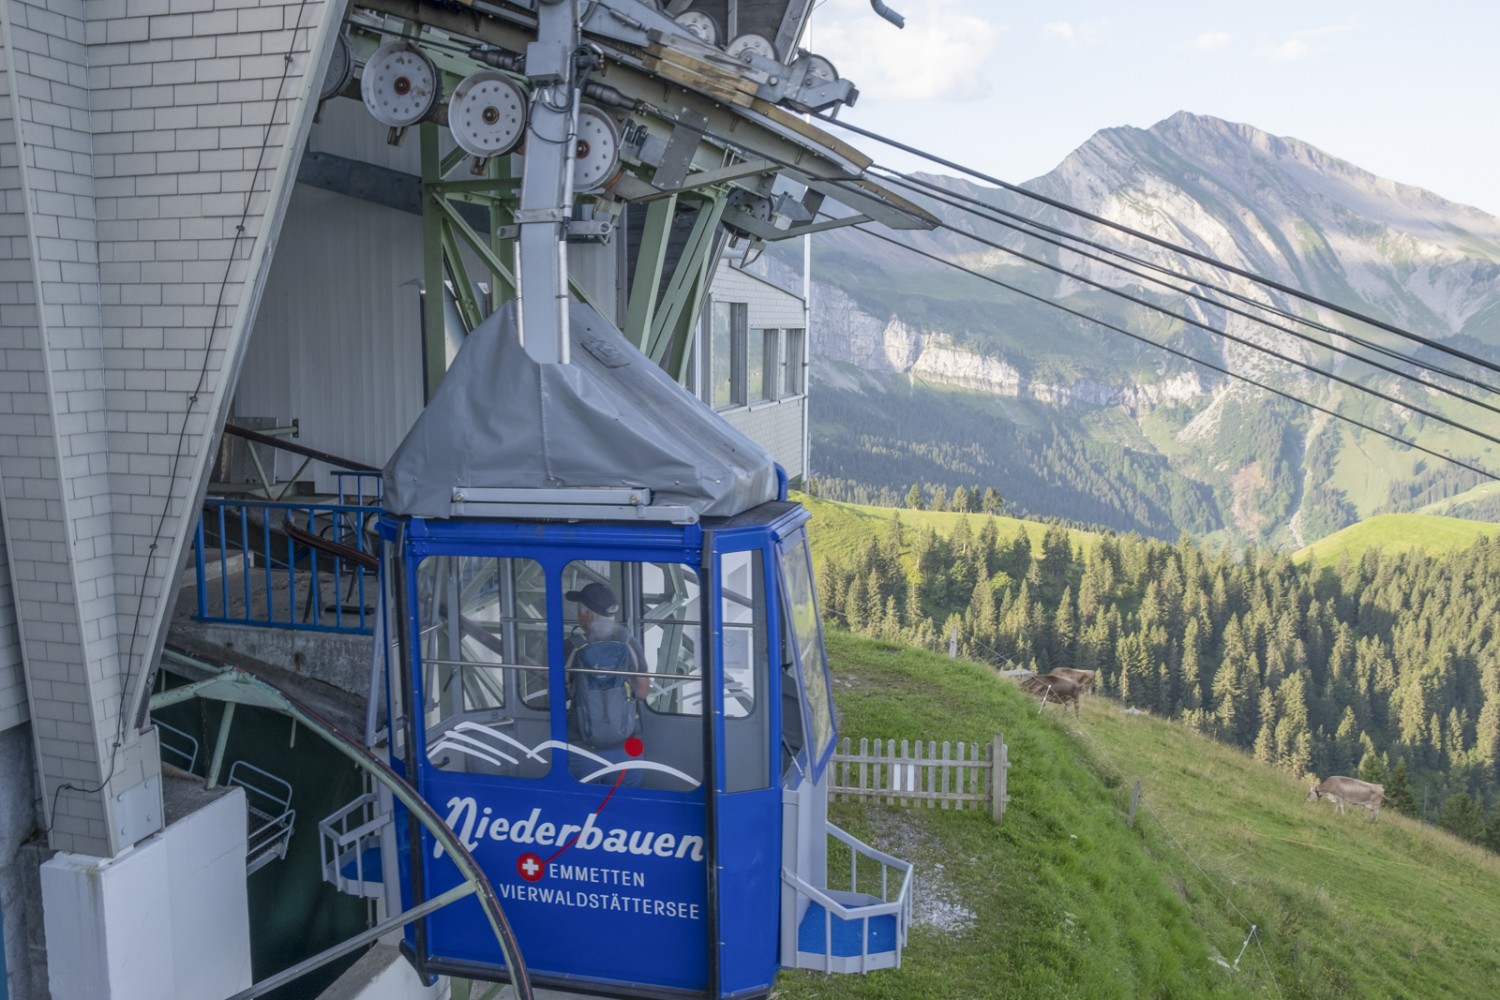 Diese Bahn fährt von Emmetten hinauf auf die Alp Niederbauen. Bild: Markus Ruff